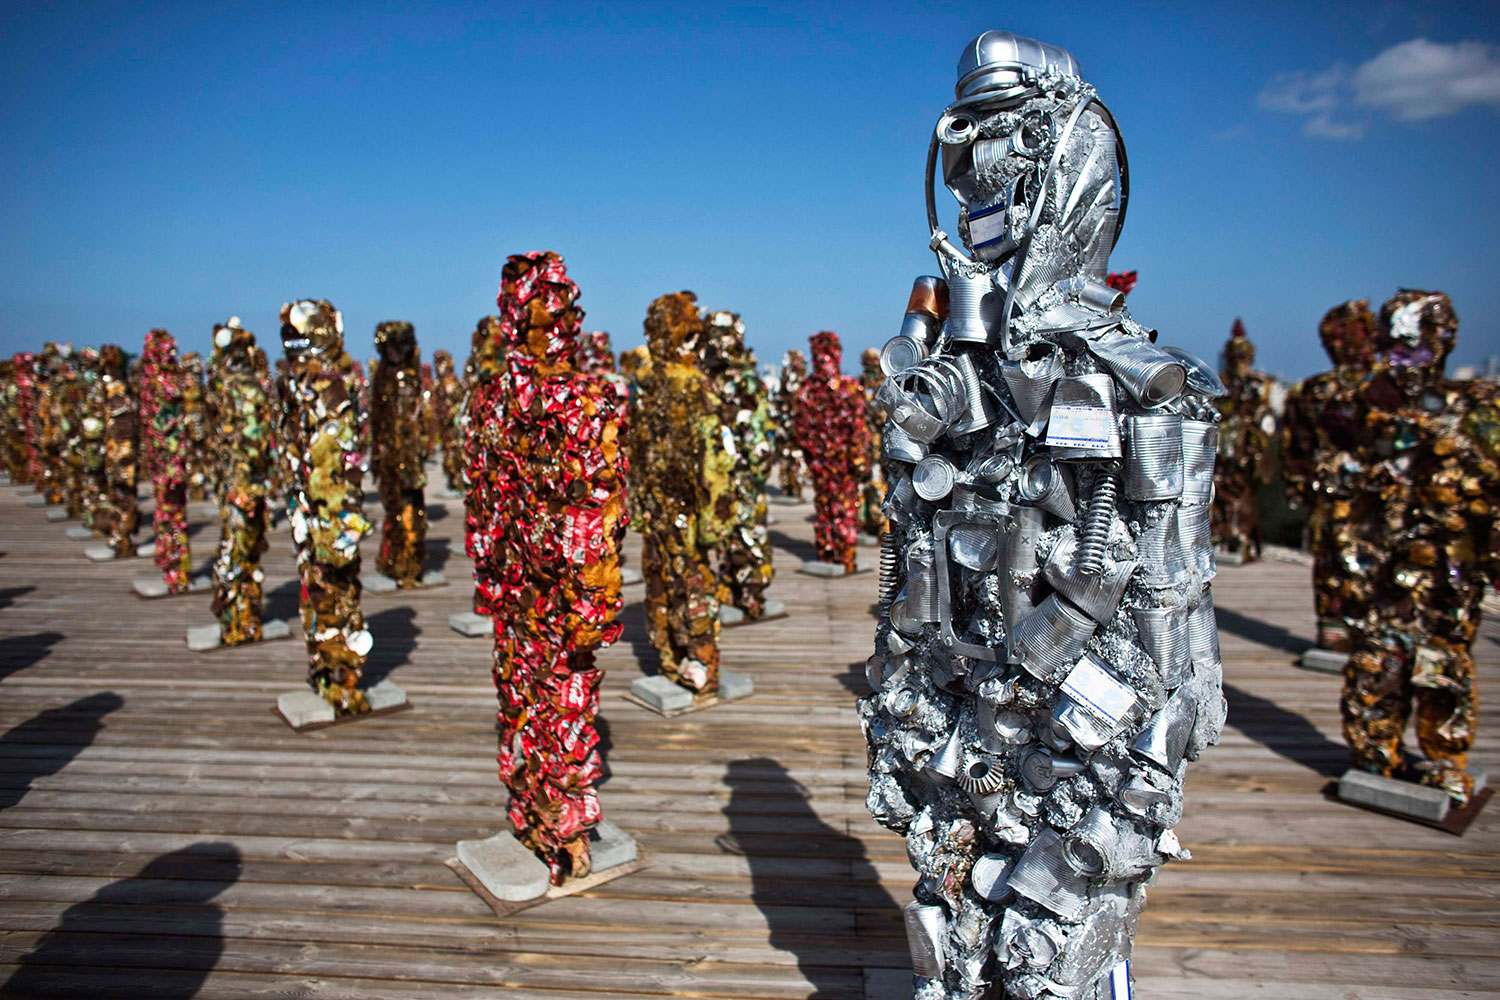 Tel Aviv recibe «Trash People», figuras realizadas con 20 toneladas de material reciclado